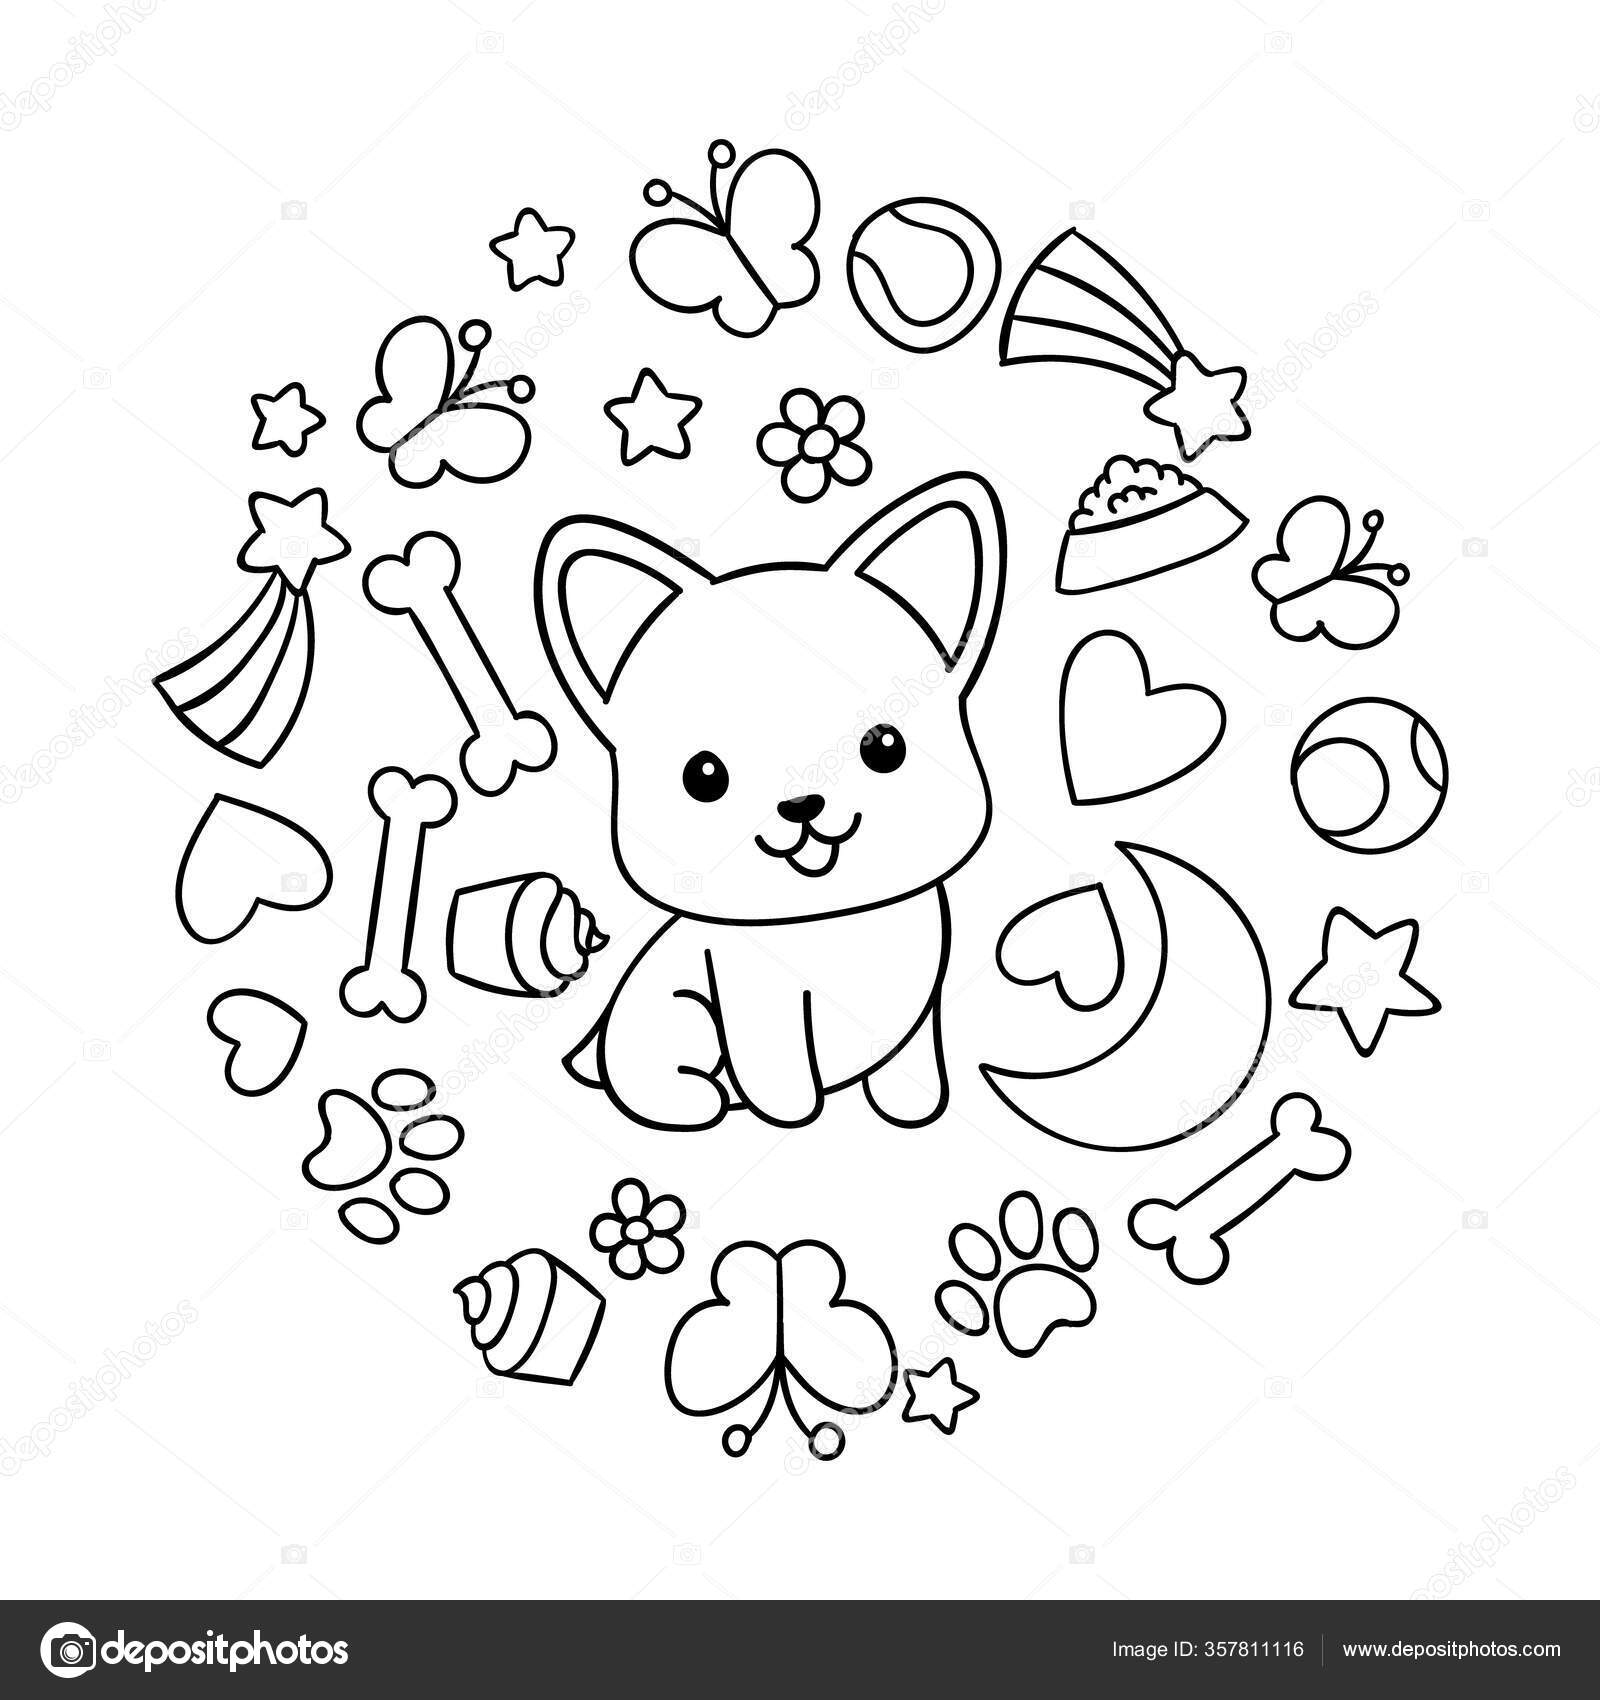 Coloring pages black white cute kawaii hand drawn corgi dog stock vector by dikabrina